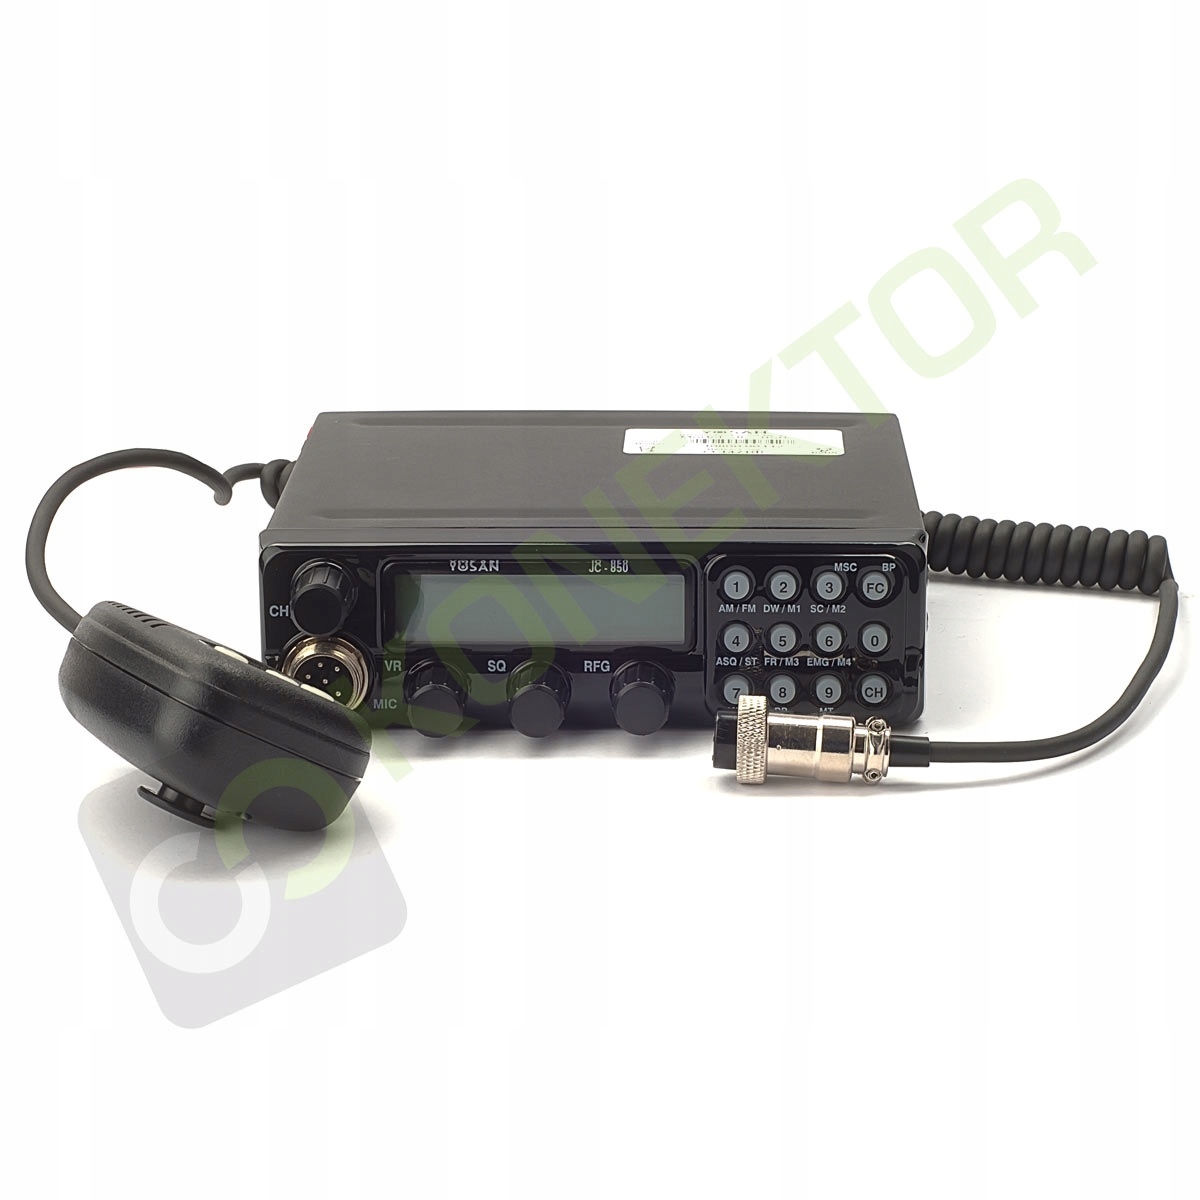 „Yosan JC-850“ geras CB radijas - „3031 TURBO“ perėmėjas Gamintojo kodas JC-850